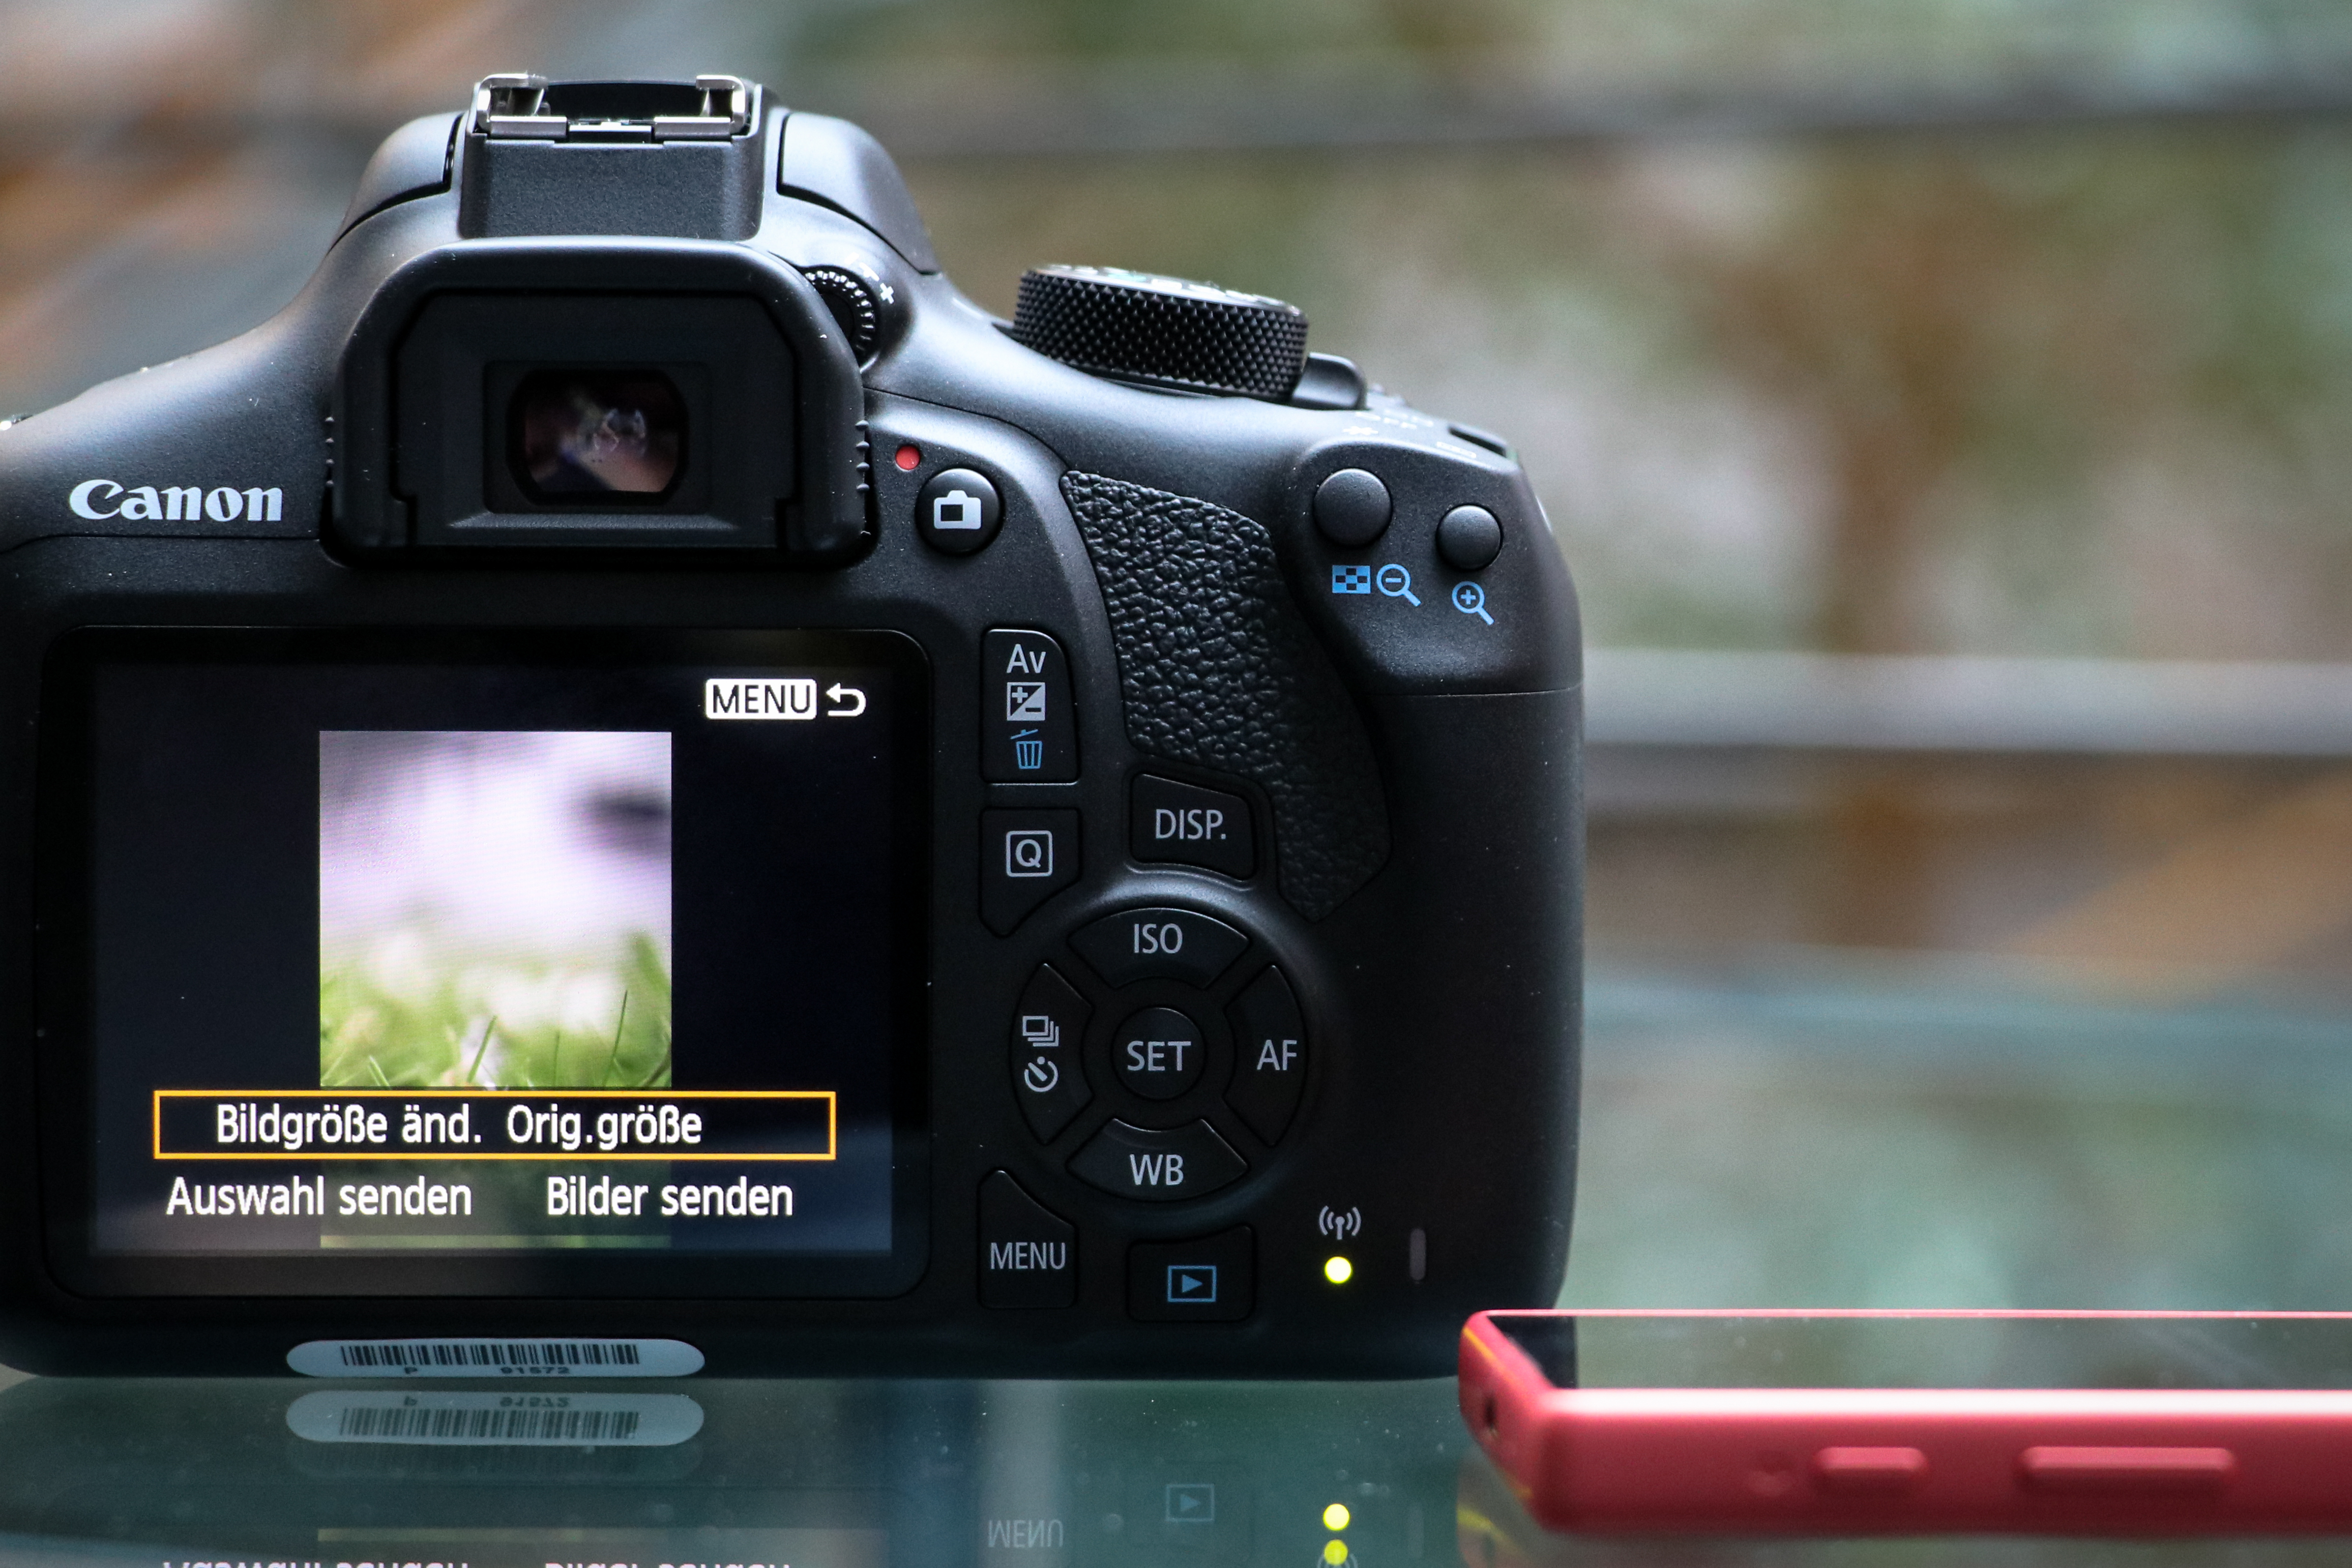 Kontaktfreudig: Canon EOS 1300D und das Smartphone | heise online